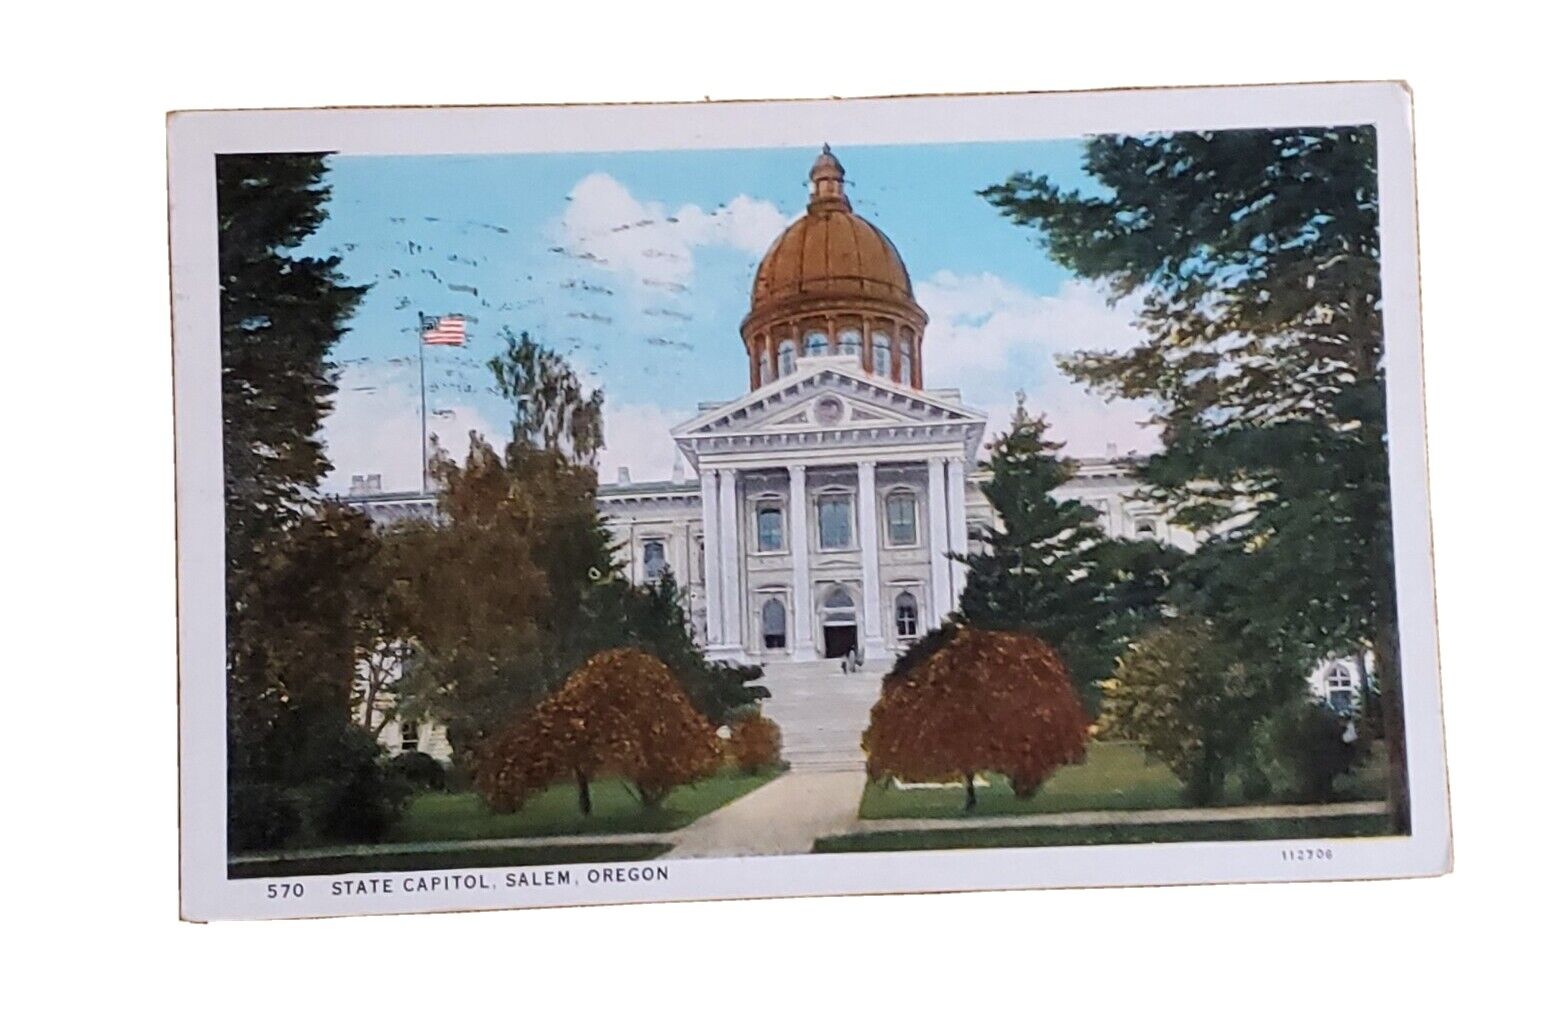 1932 Salem, OR Vintage Postcard: 570 State Capitol, Salem, Oregon